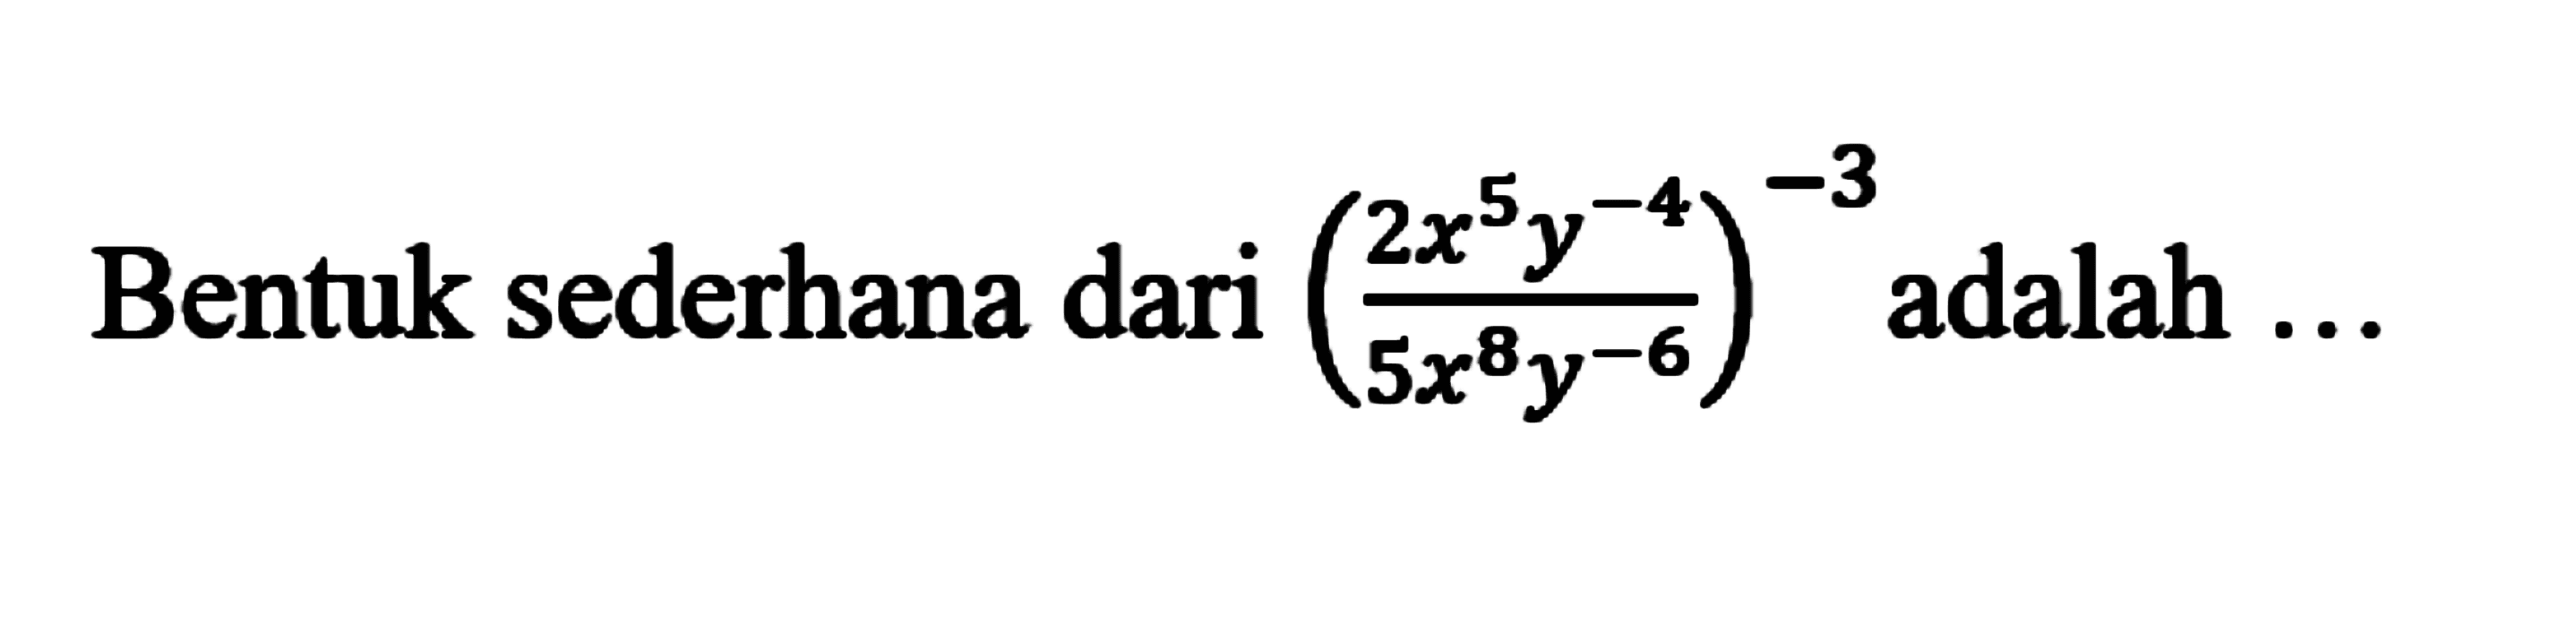 Bentuk sederhana dari (2x^5y^-4/5x^8y^-6)^-3 adalah....